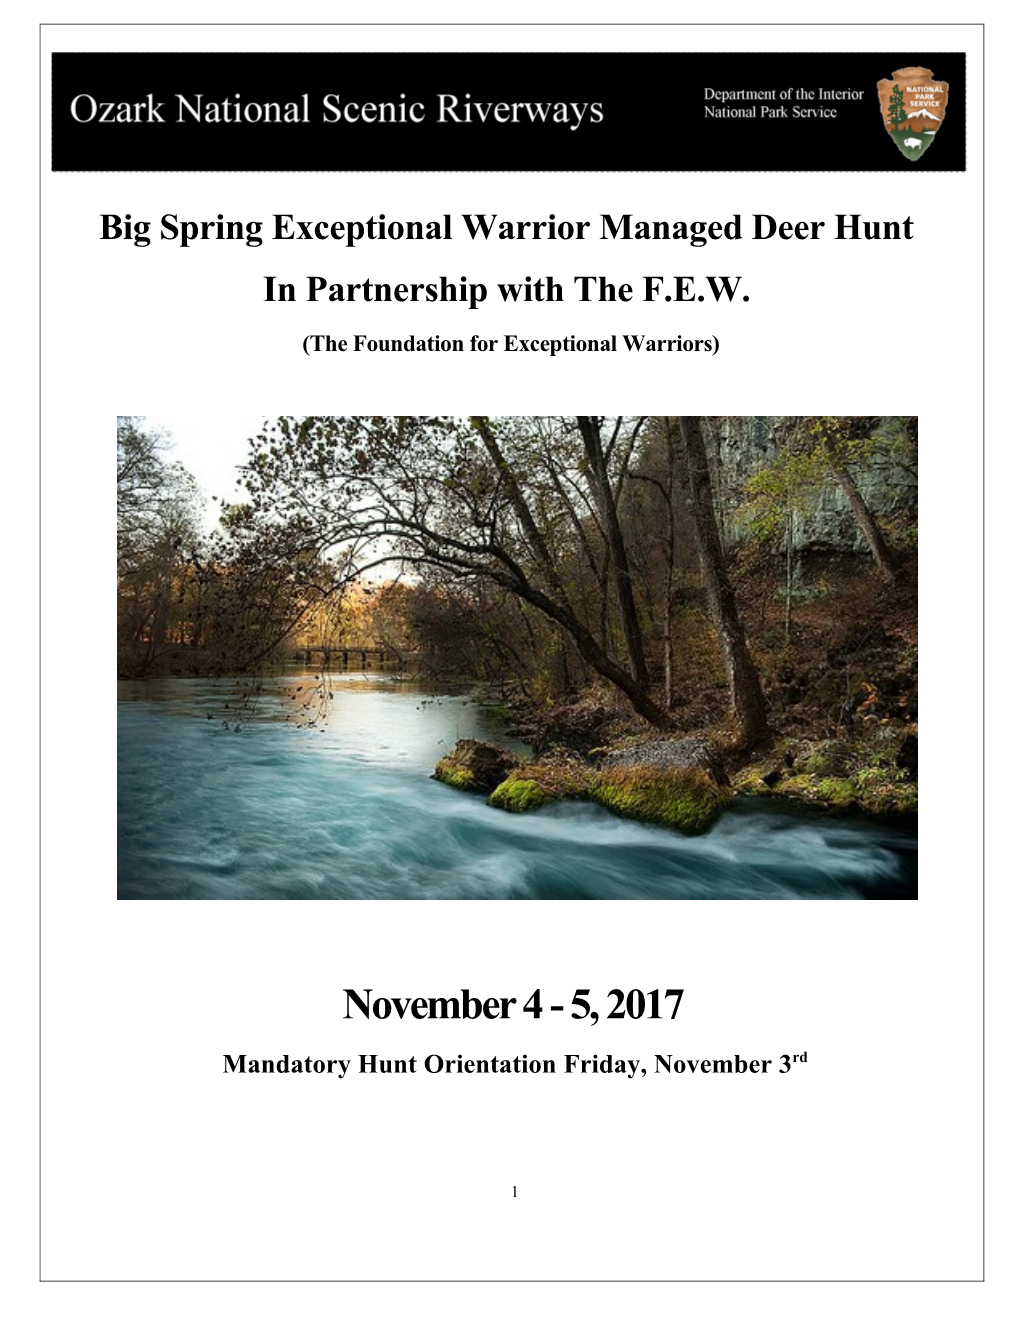 Big Spring Exceptional Warrior Managed Deer Hunt